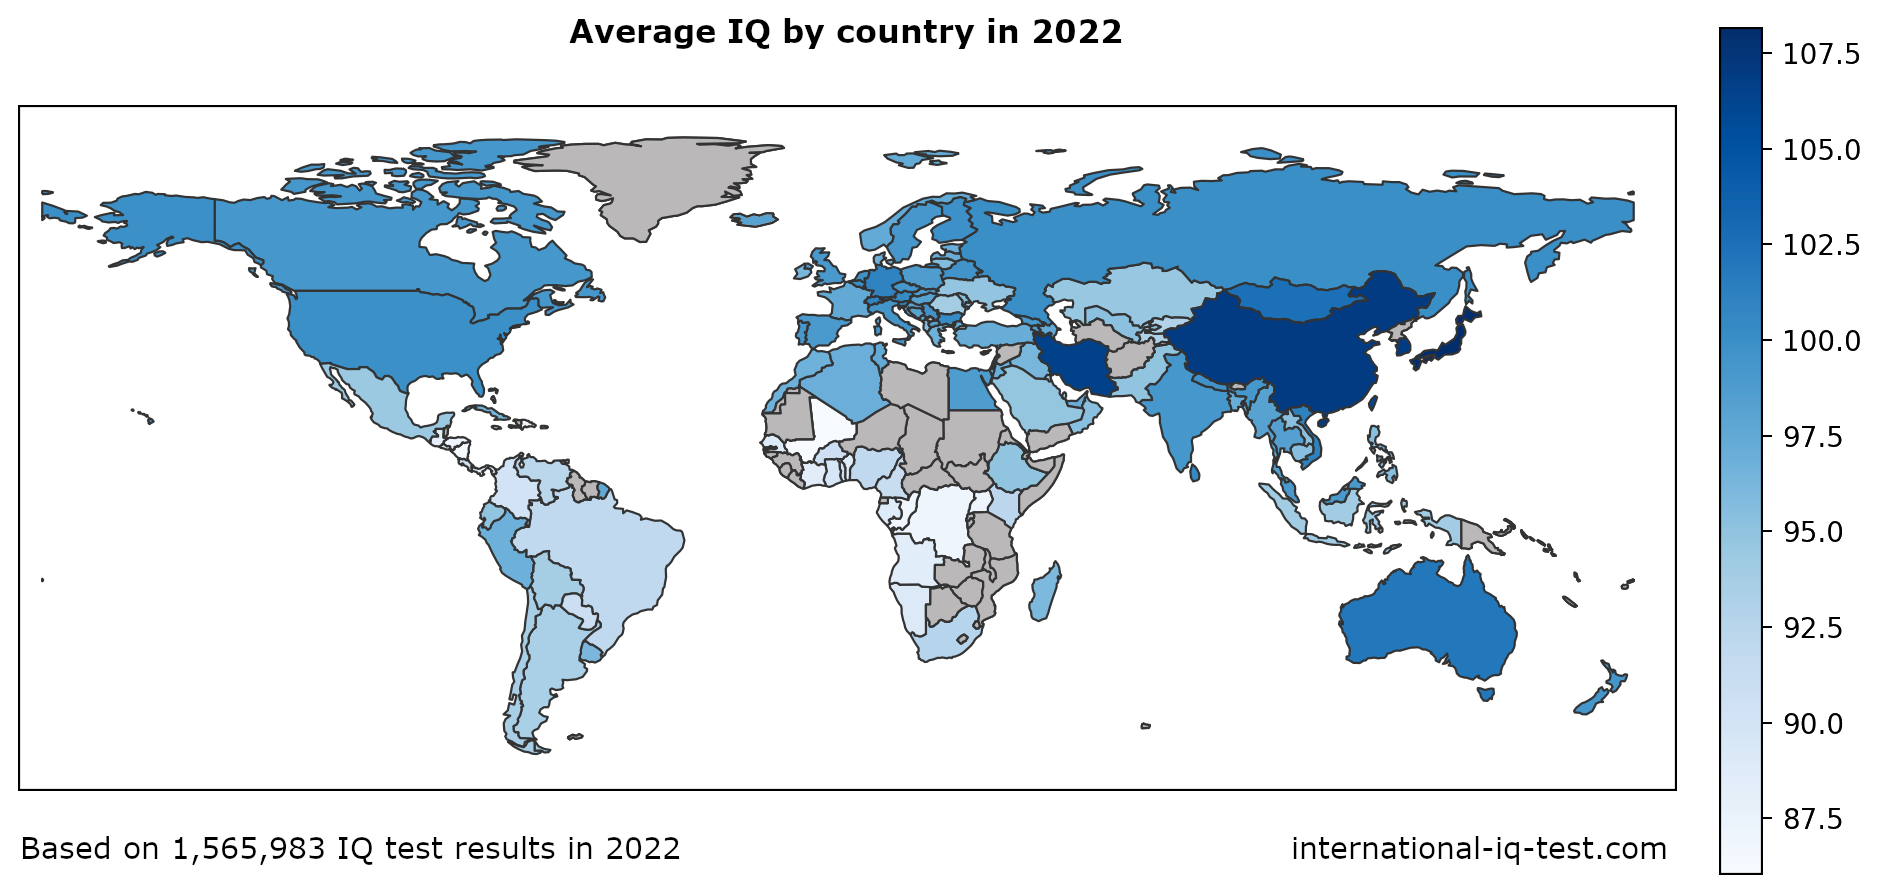 Verdenskart som viser gjennomsnittlig IQ per land i 2022 med blå nyanser fra lysest til mørkest.